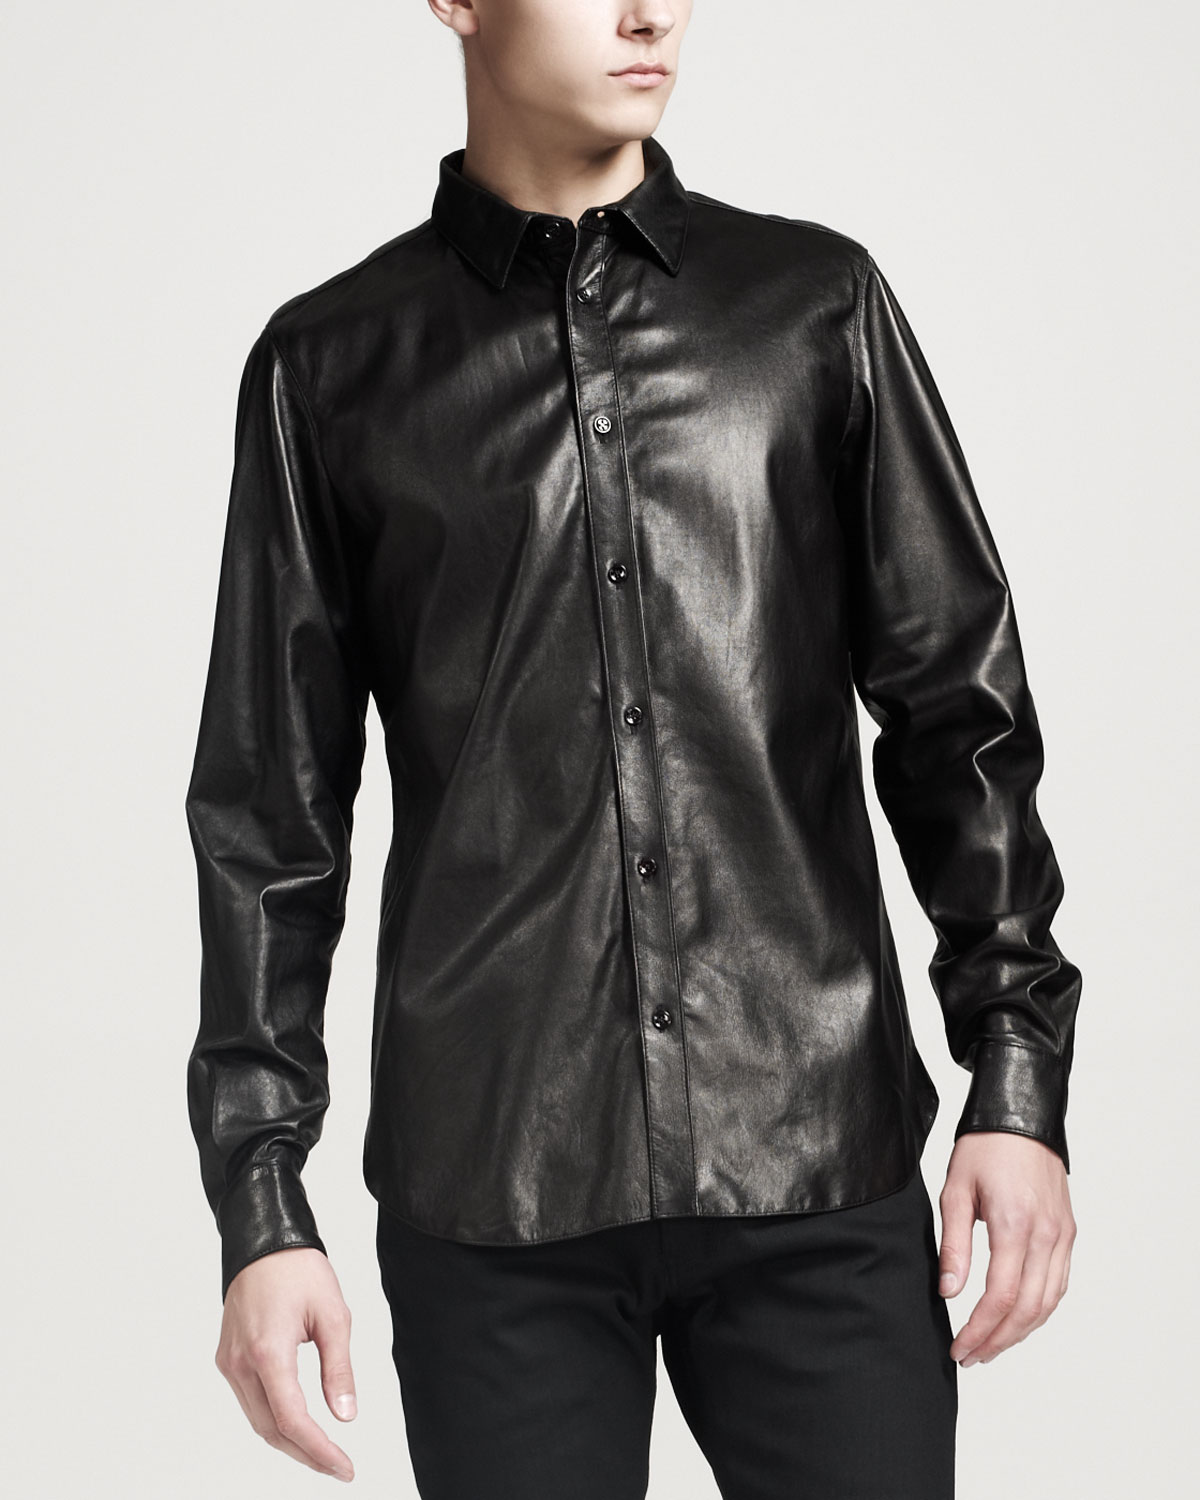 Lyst - Saint laurent Leather Buttondown Shirt Black in Black for Men